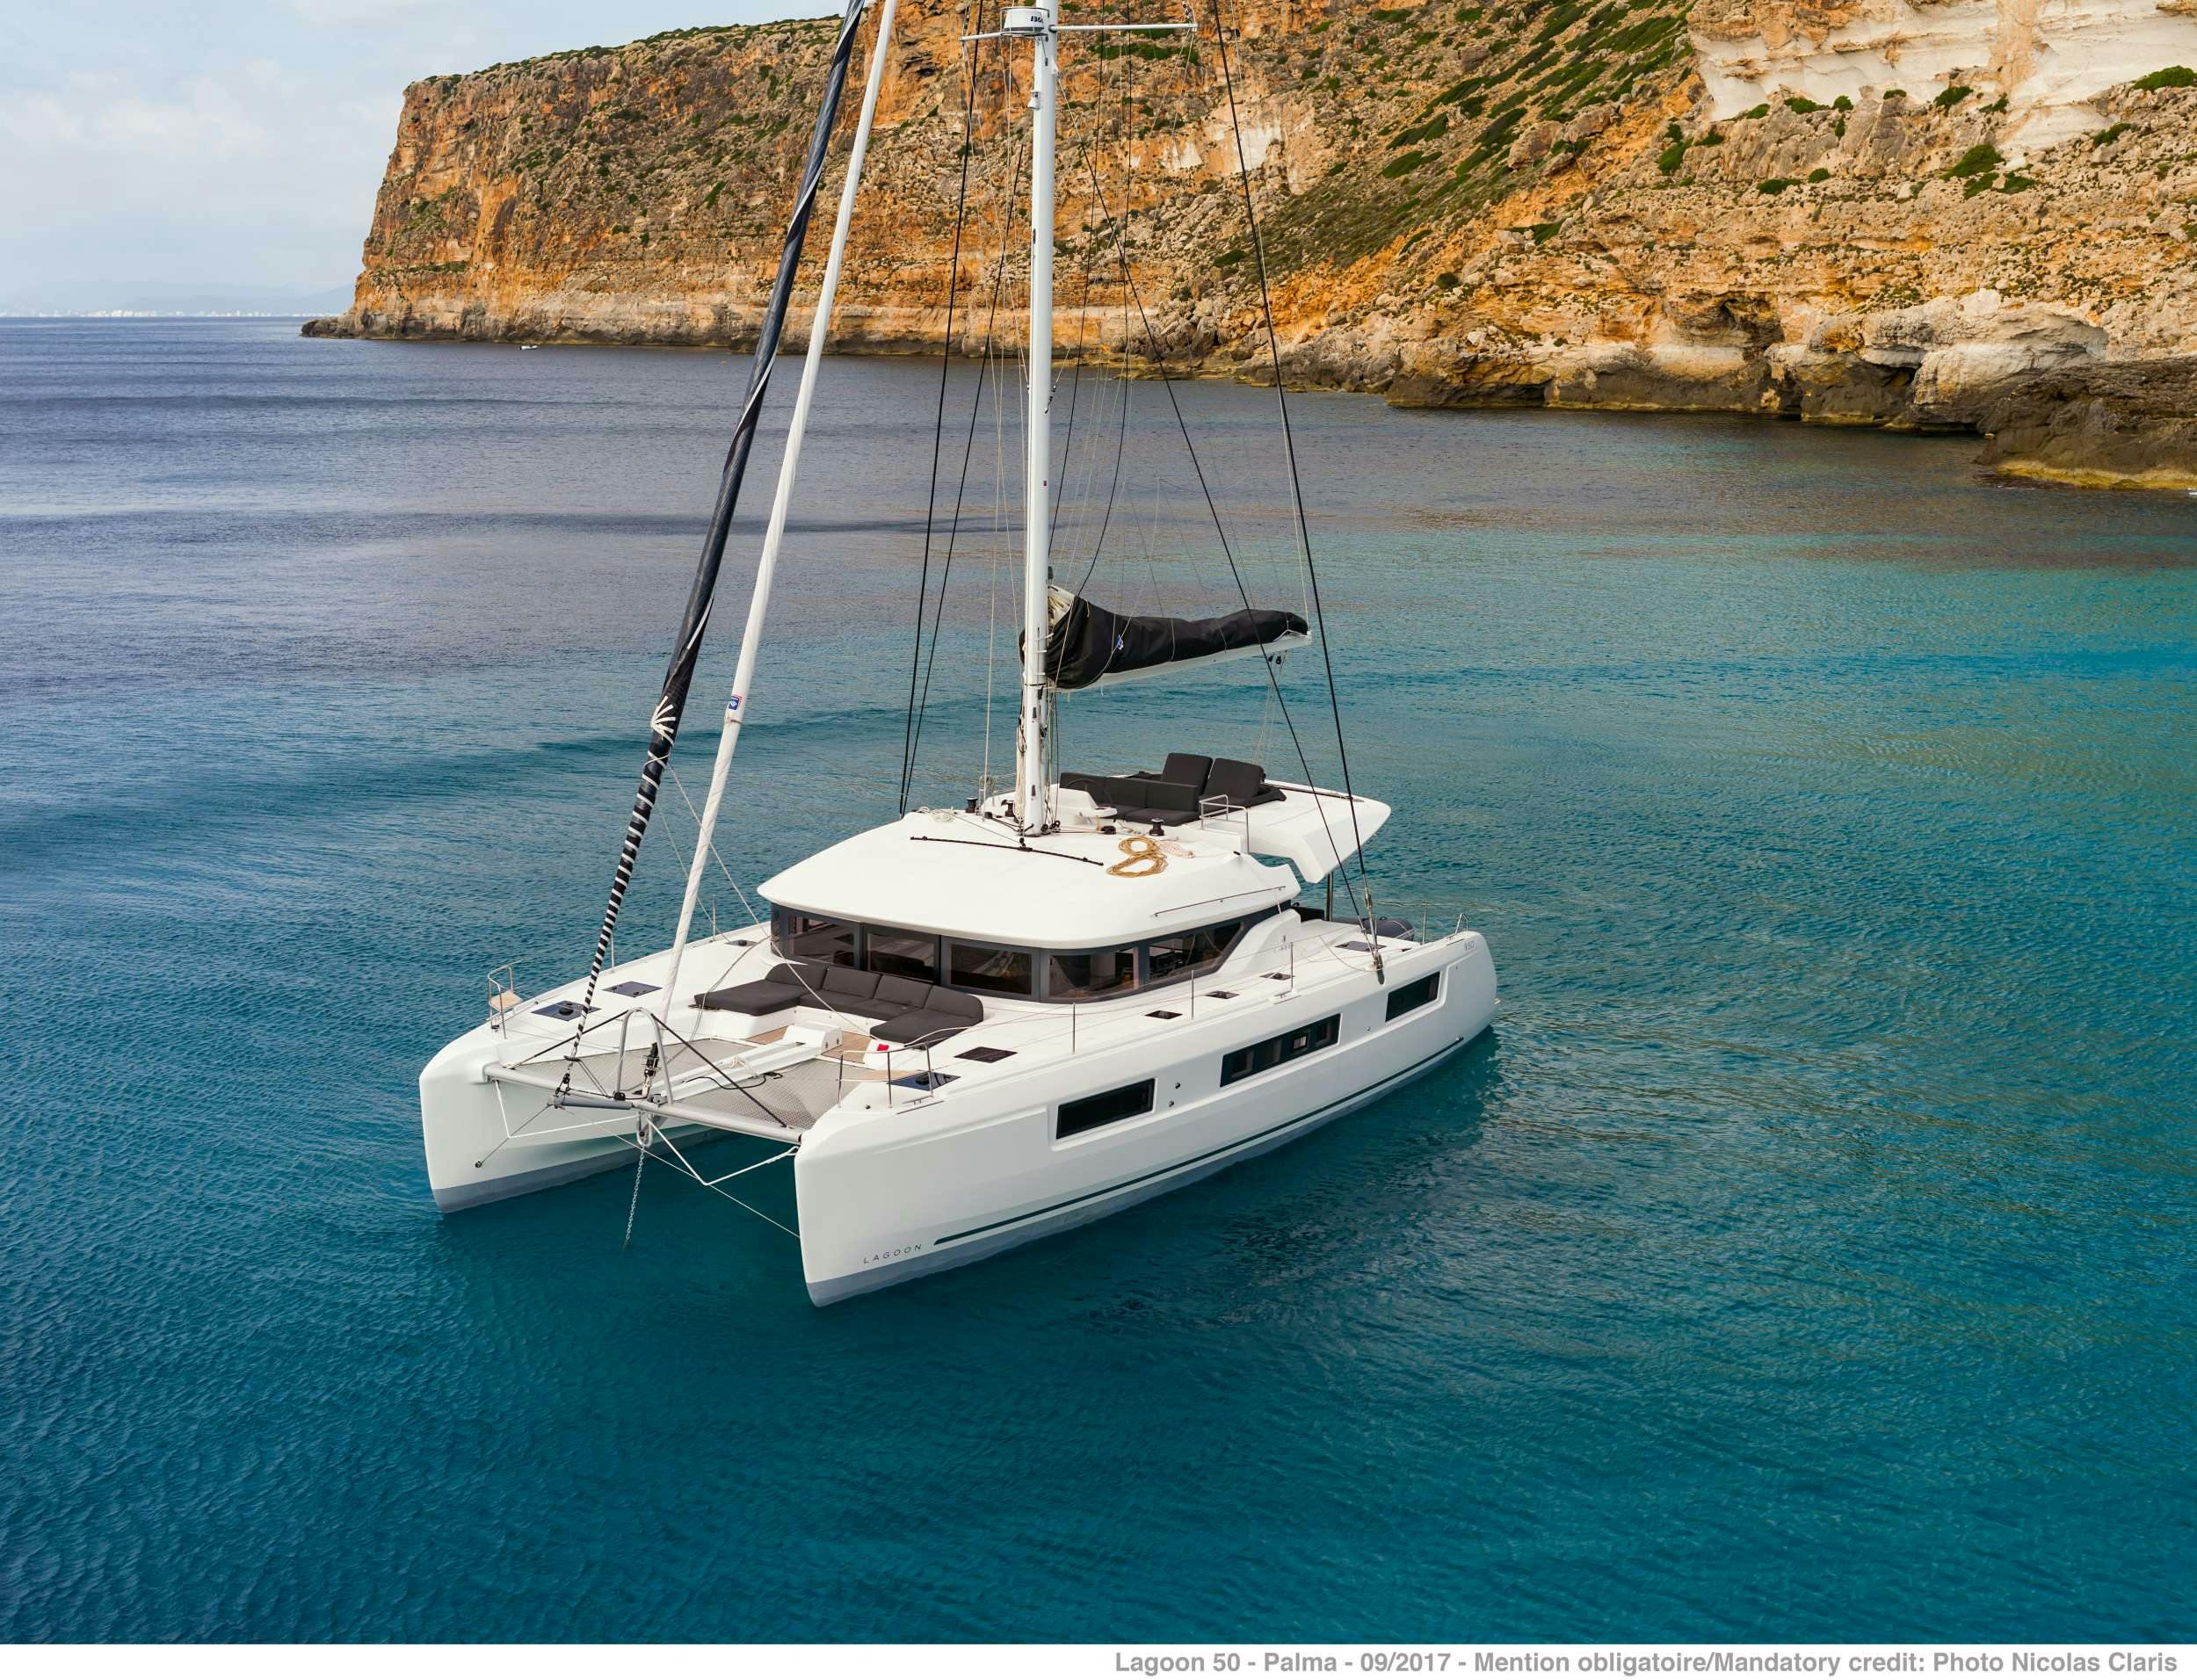 ONEIDA 2 - Boat hire worldwide & Boat hire in Greece 1